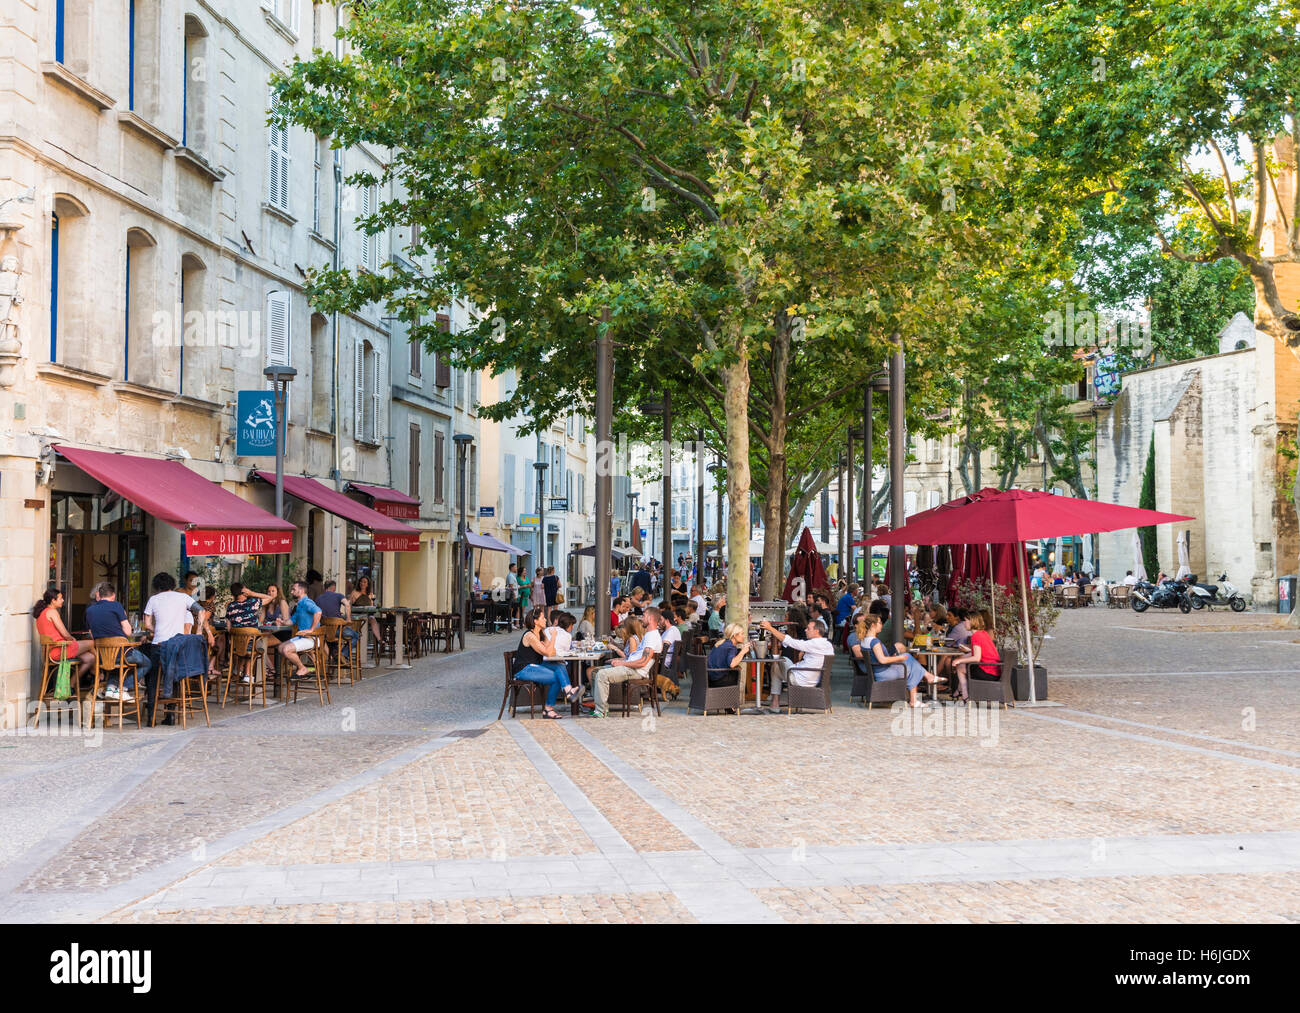 Menschen Essen im Restaurant im Freien Tische in den frühen Abendstunden am Place des Corps Saints, Avignon, Frankreich Stockfoto